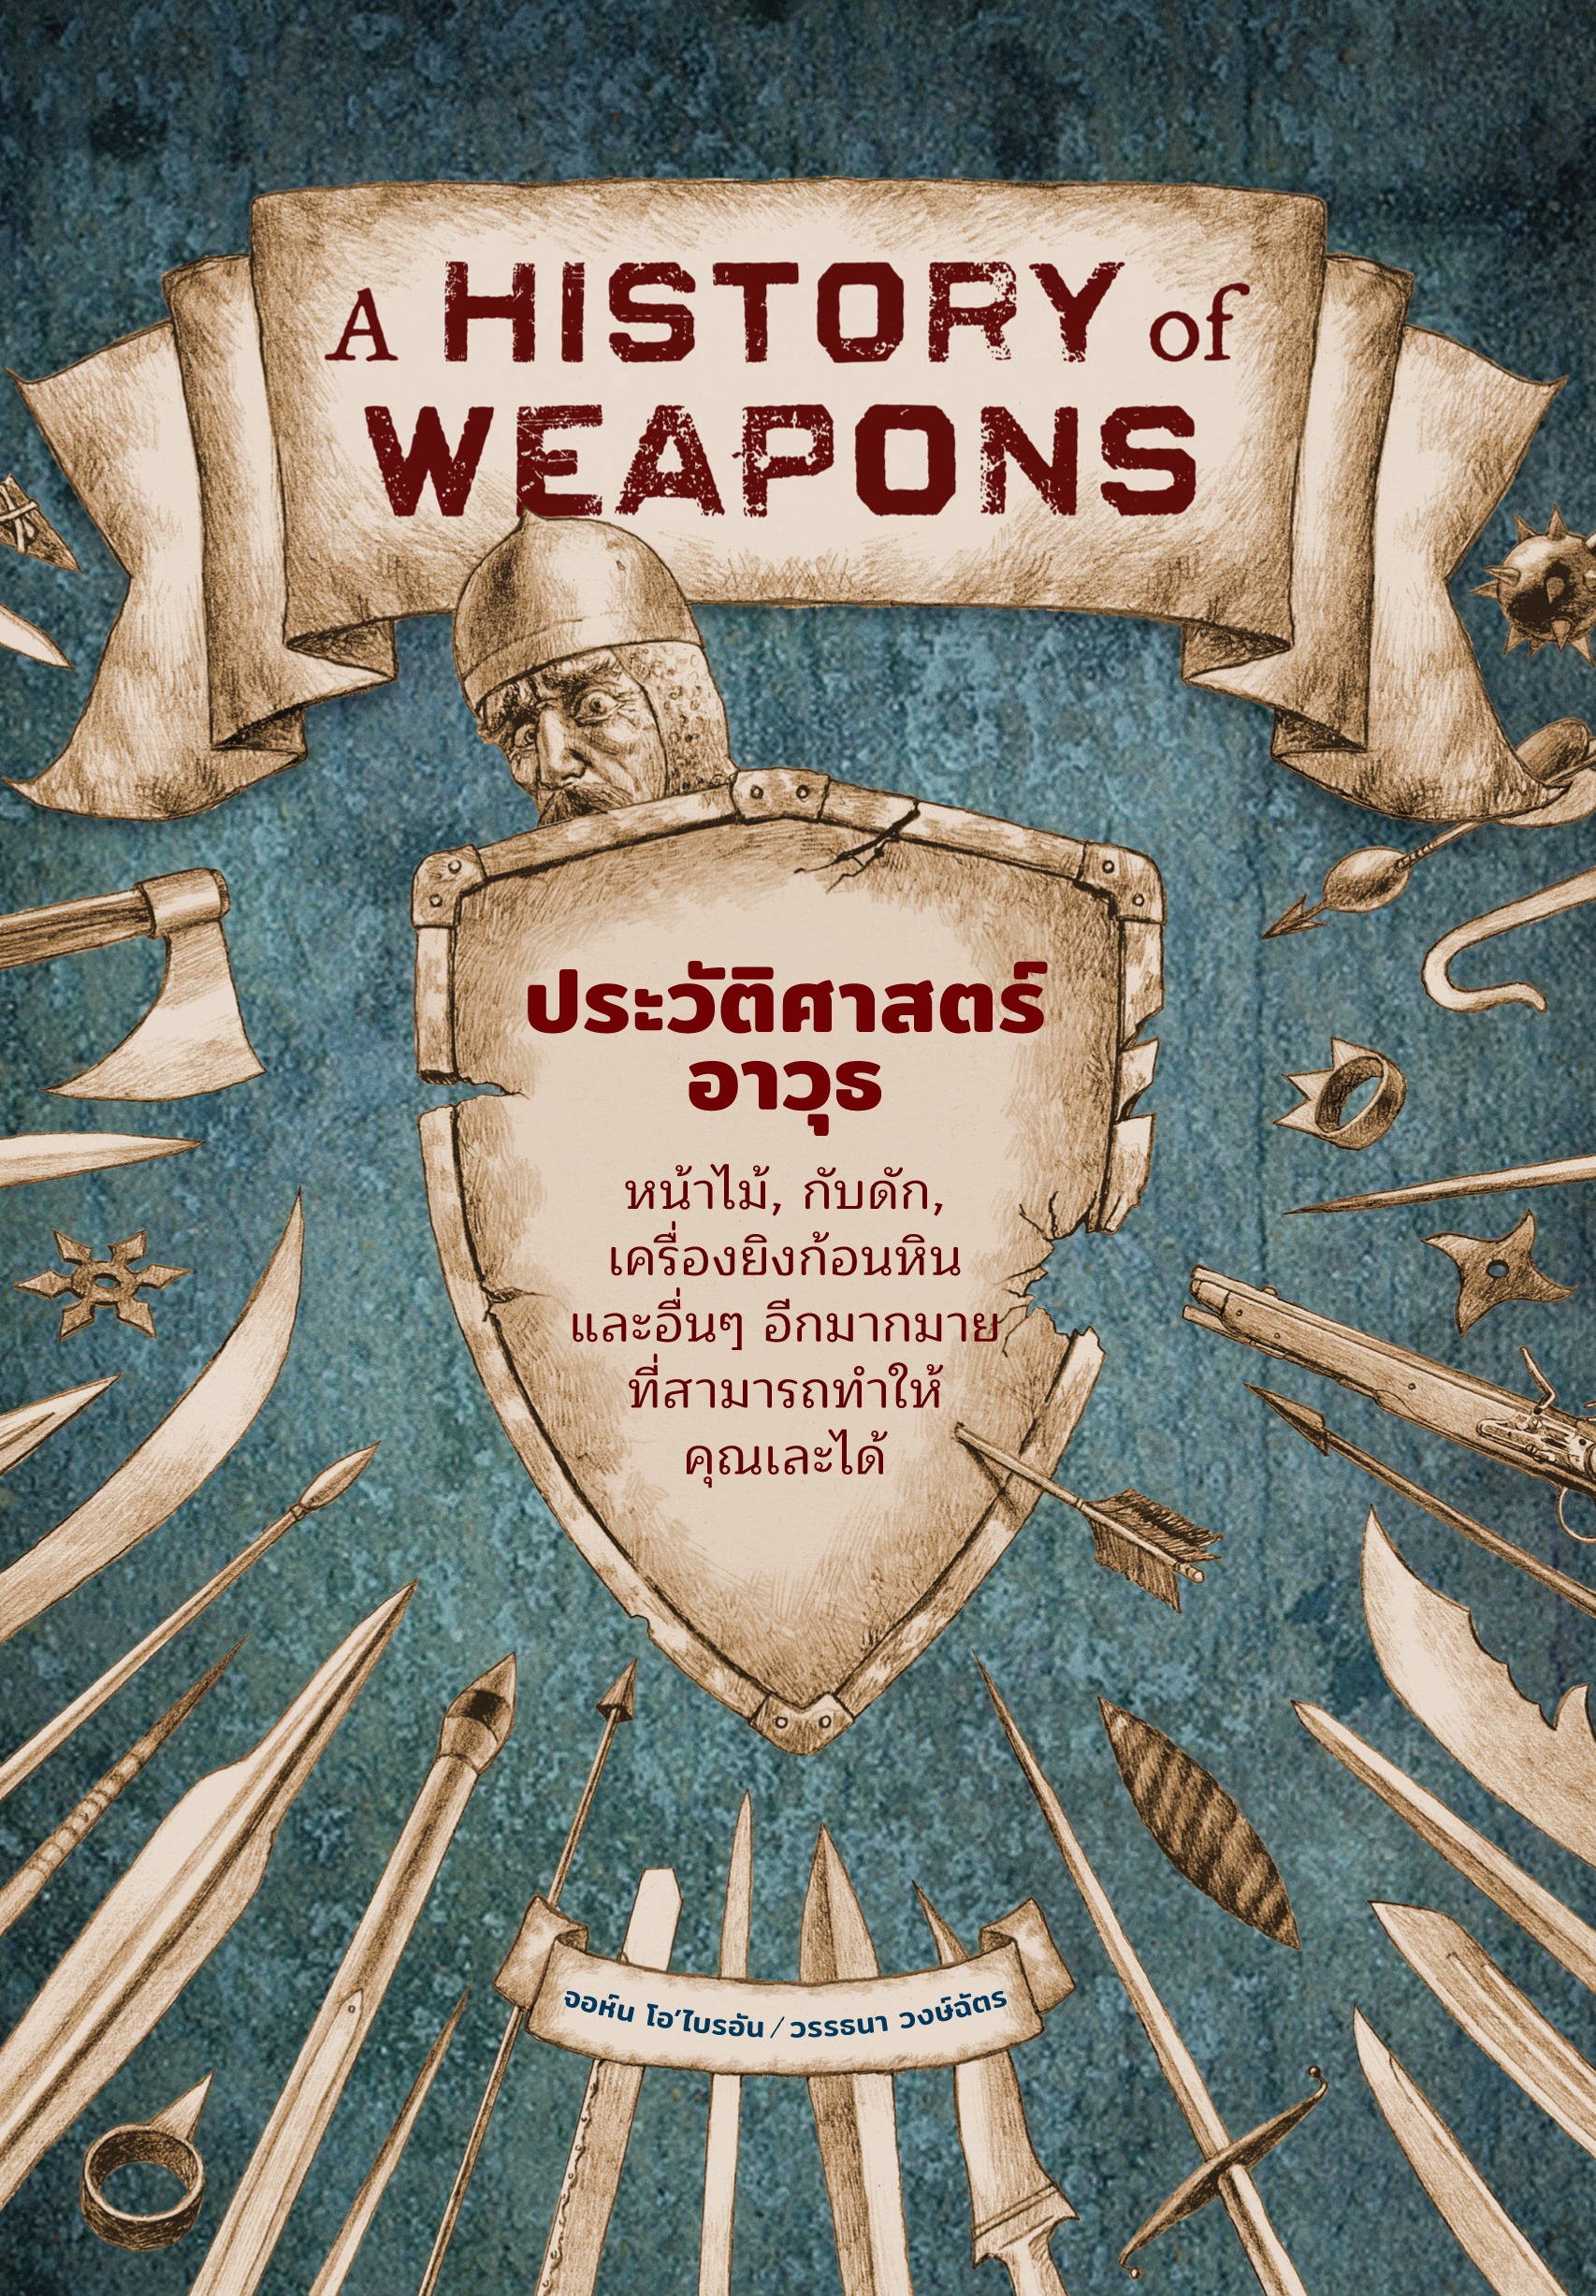 หนังสือประวัติศาสตร์อาวุธ : A History of Weapons